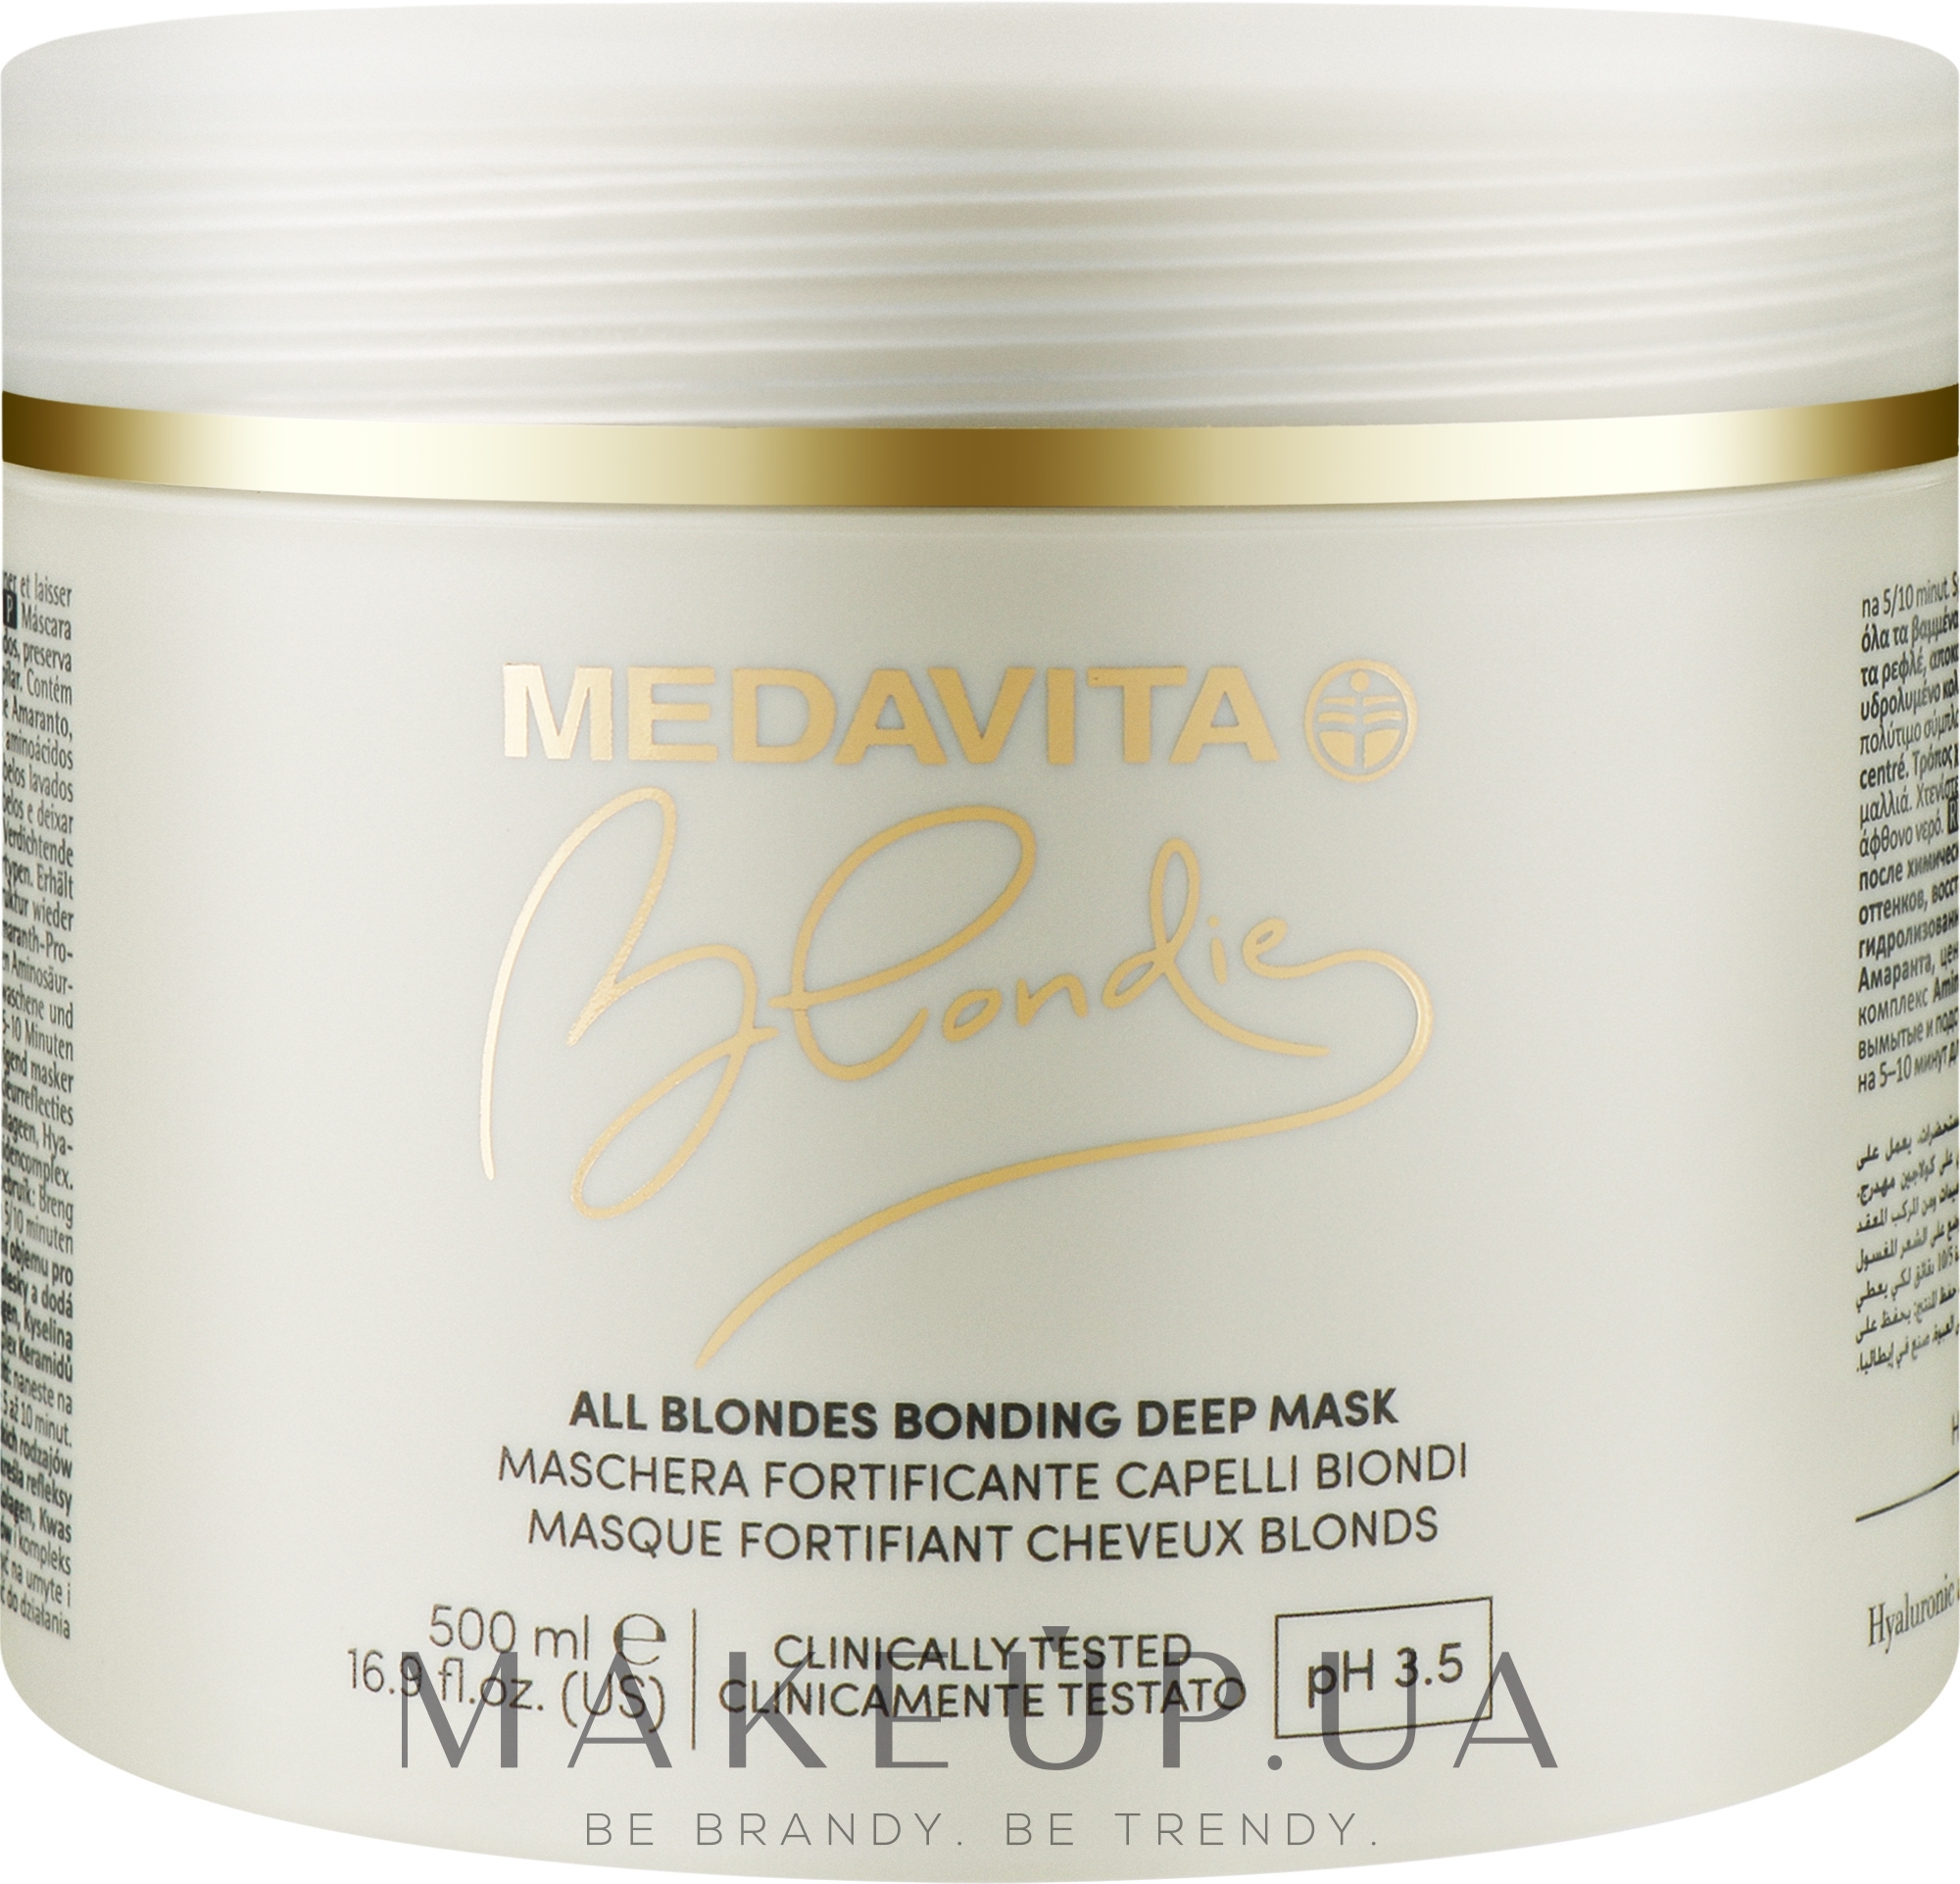 Глубоко укрепляющая маска для всех оттенков блонда - Medavita Blondie All Blondes Bonding Deep Mask — фото 500ml